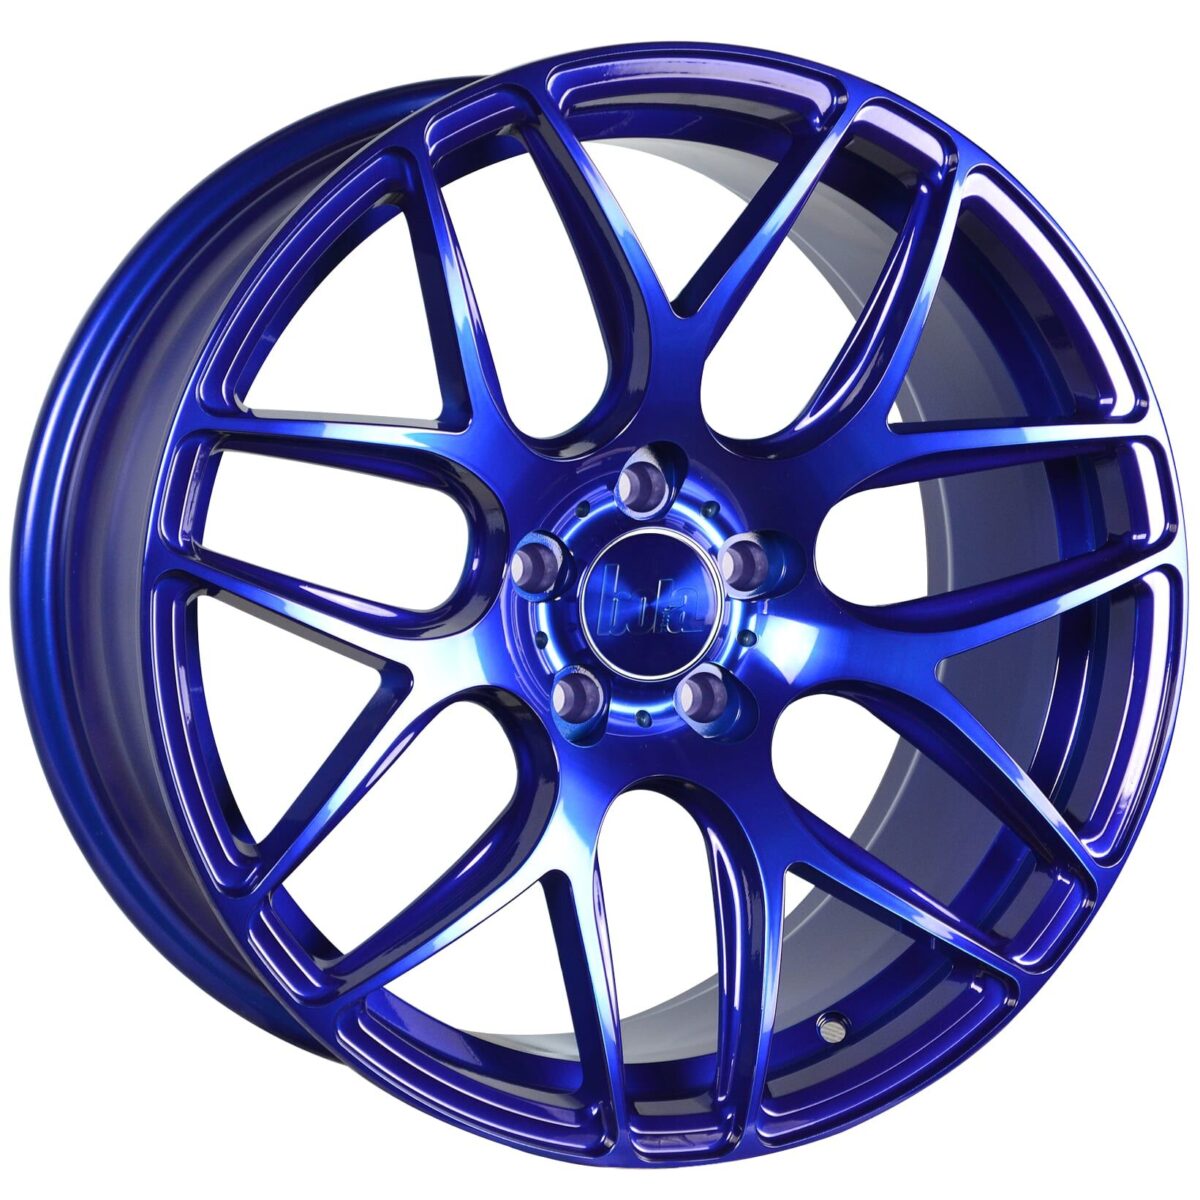 18" BOLA B8R Wheels - Candy Blue - All BMW Models